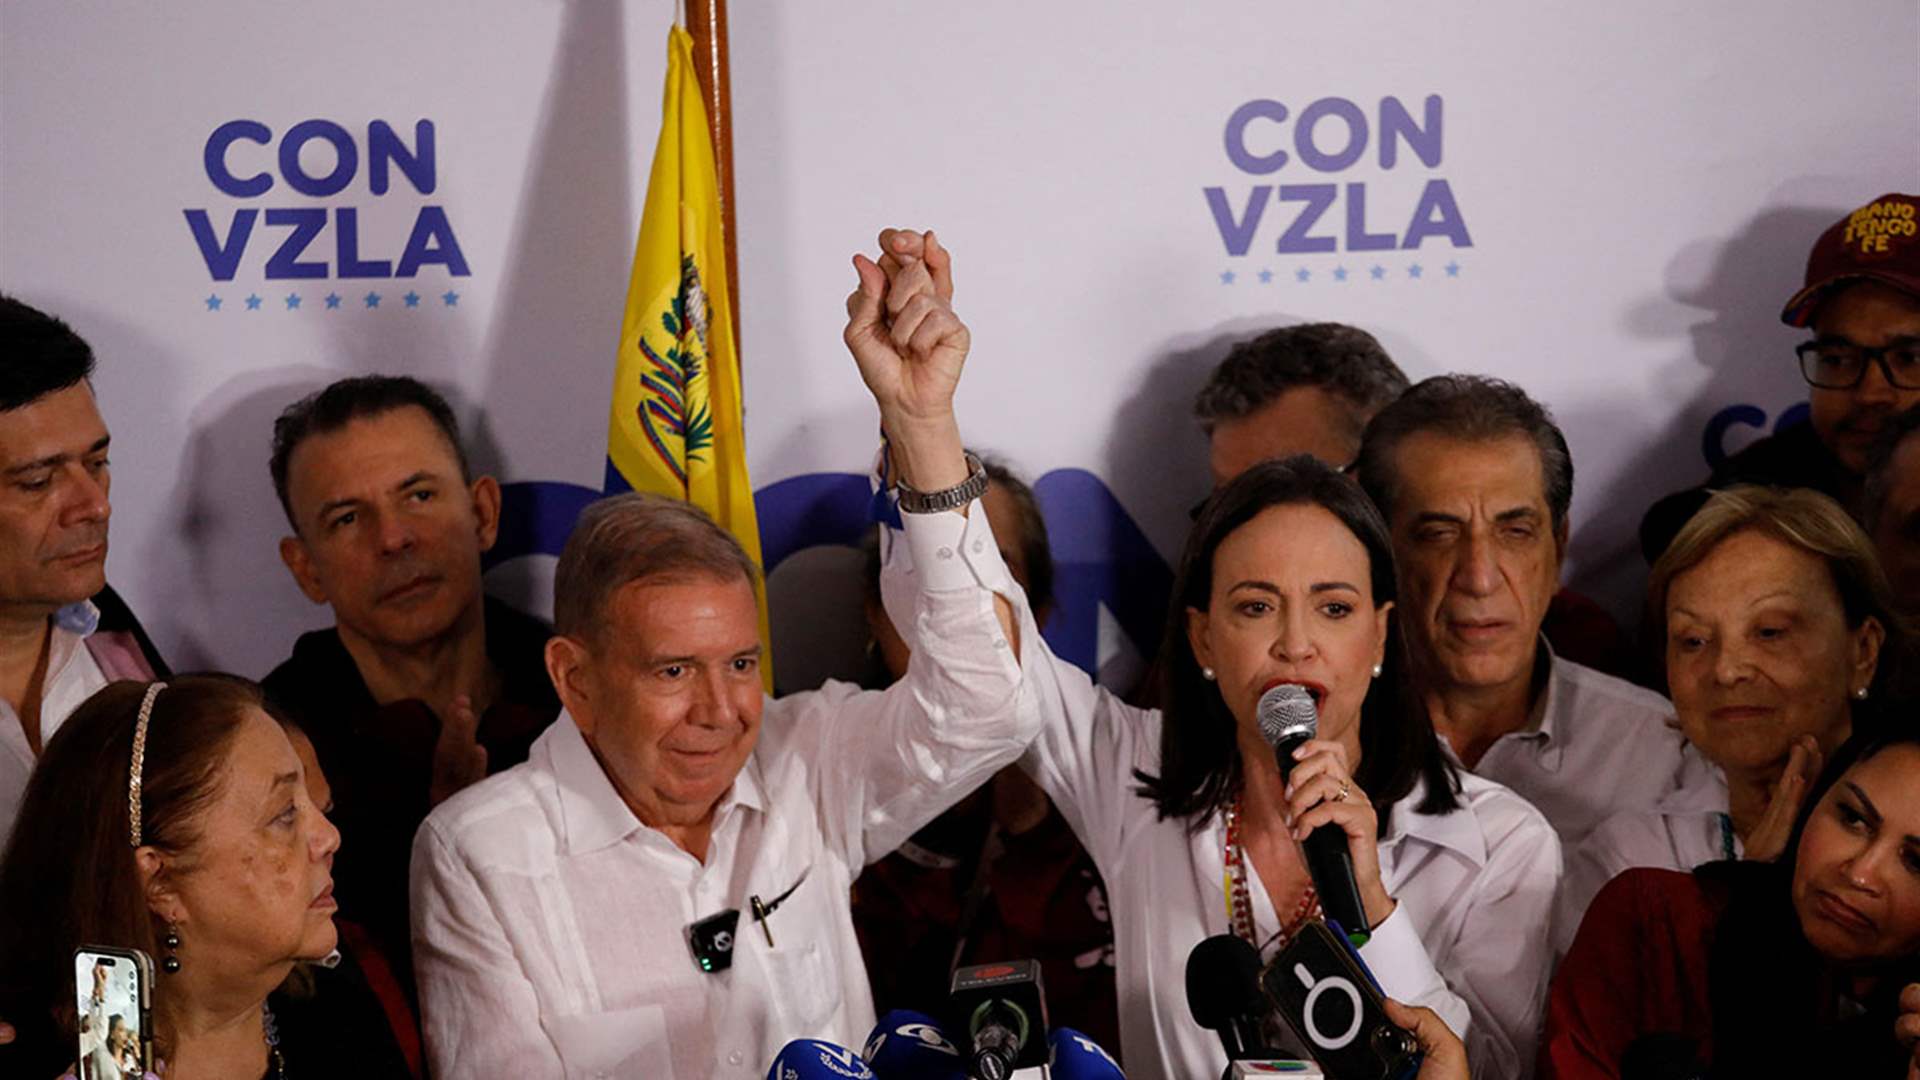 المعارضة الفنزويلية تقول إنها قادرة على إثبات فوزها في الانتخابات الرئاسية